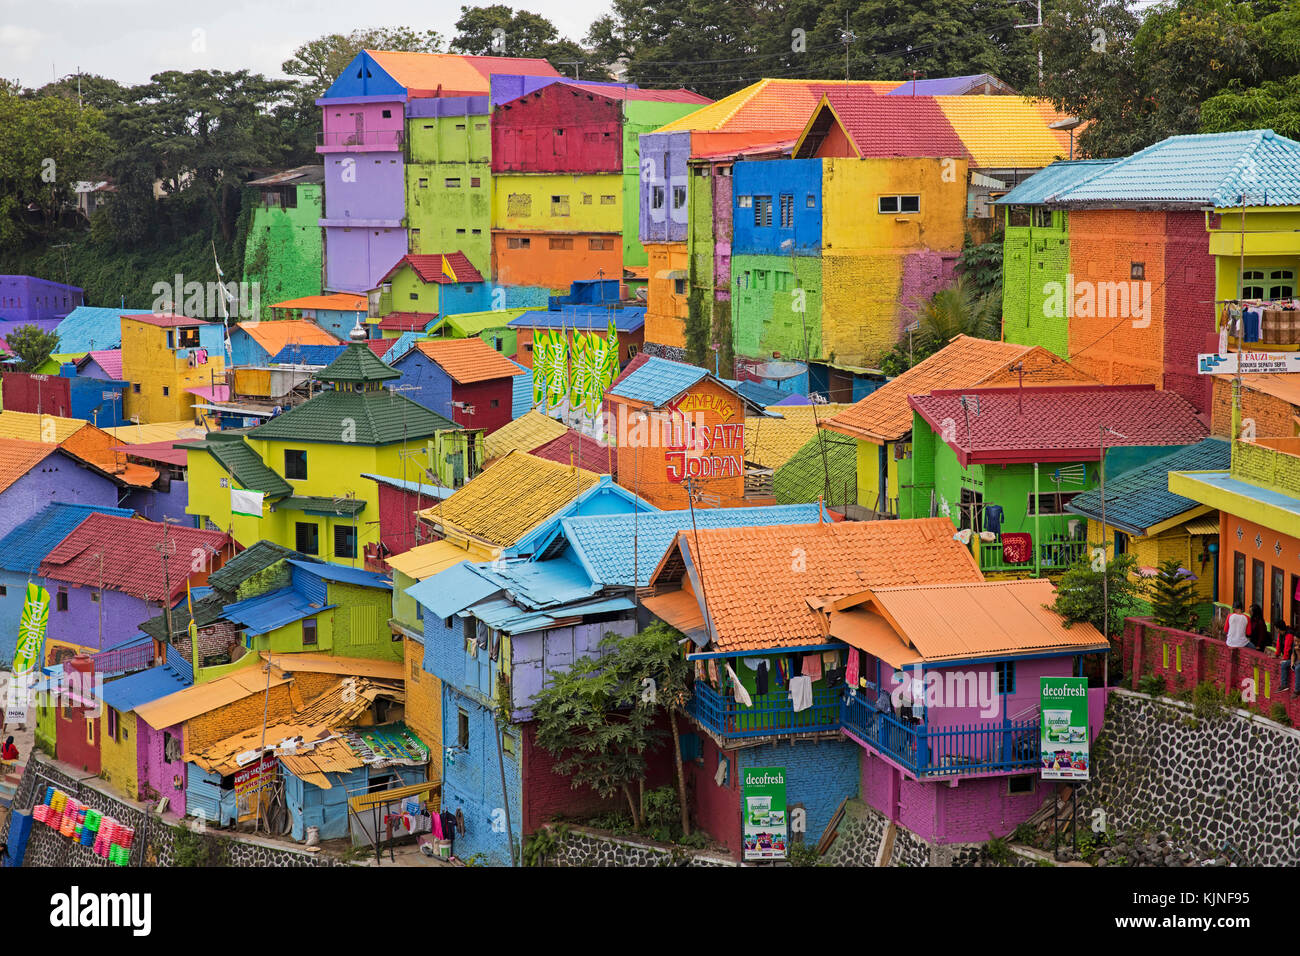 Maisons colorées à l'jodipan kampung taudis wisata artiste, faubourg de la ville malang, Jawa Timur / de l'Est de Java, Indonésie Banque D'Images